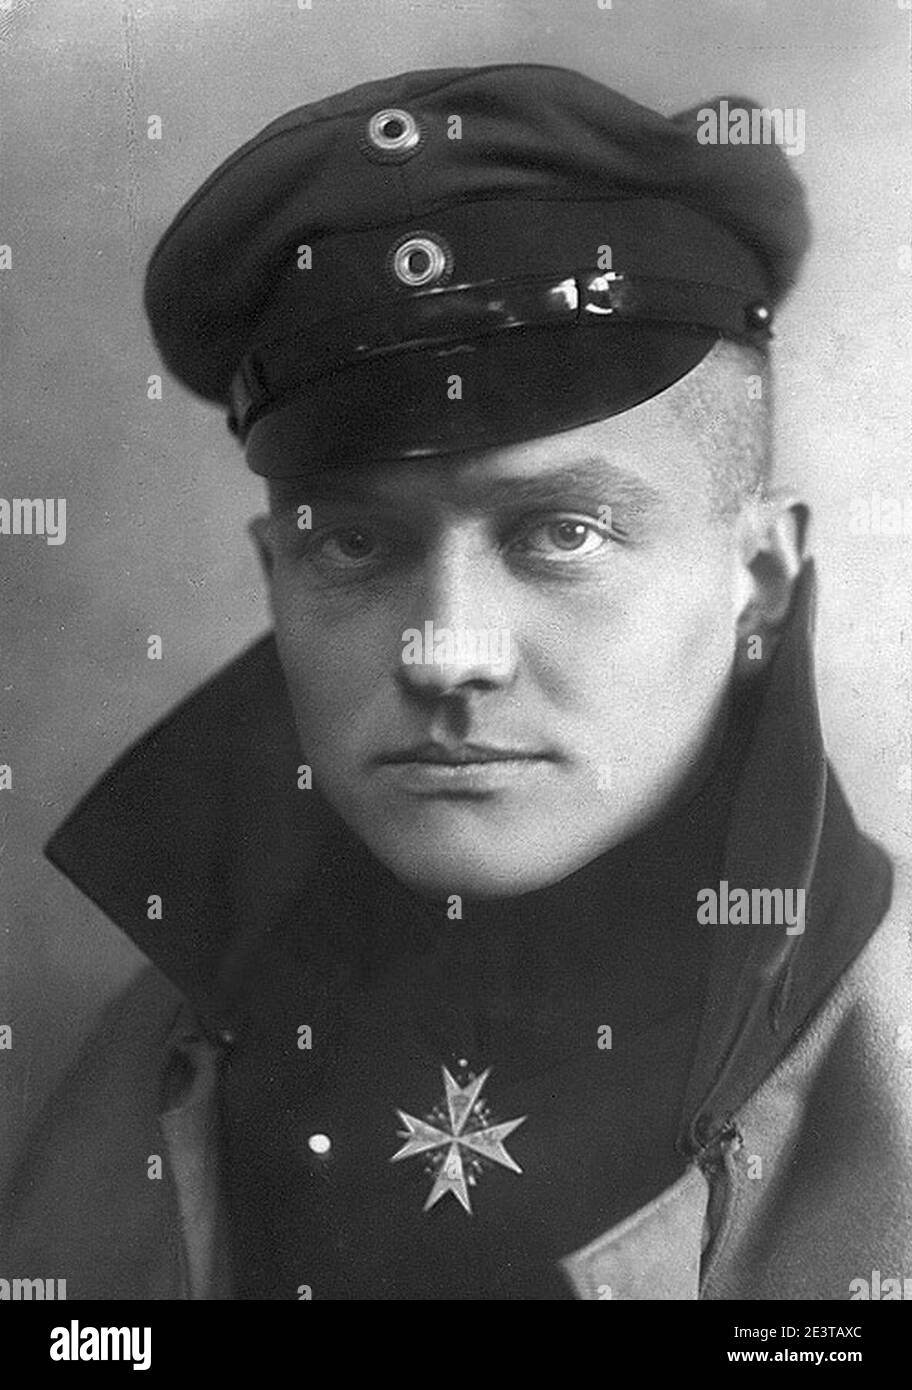 Manfred Albrecht Freiherr von Richthofen. Stock Photo